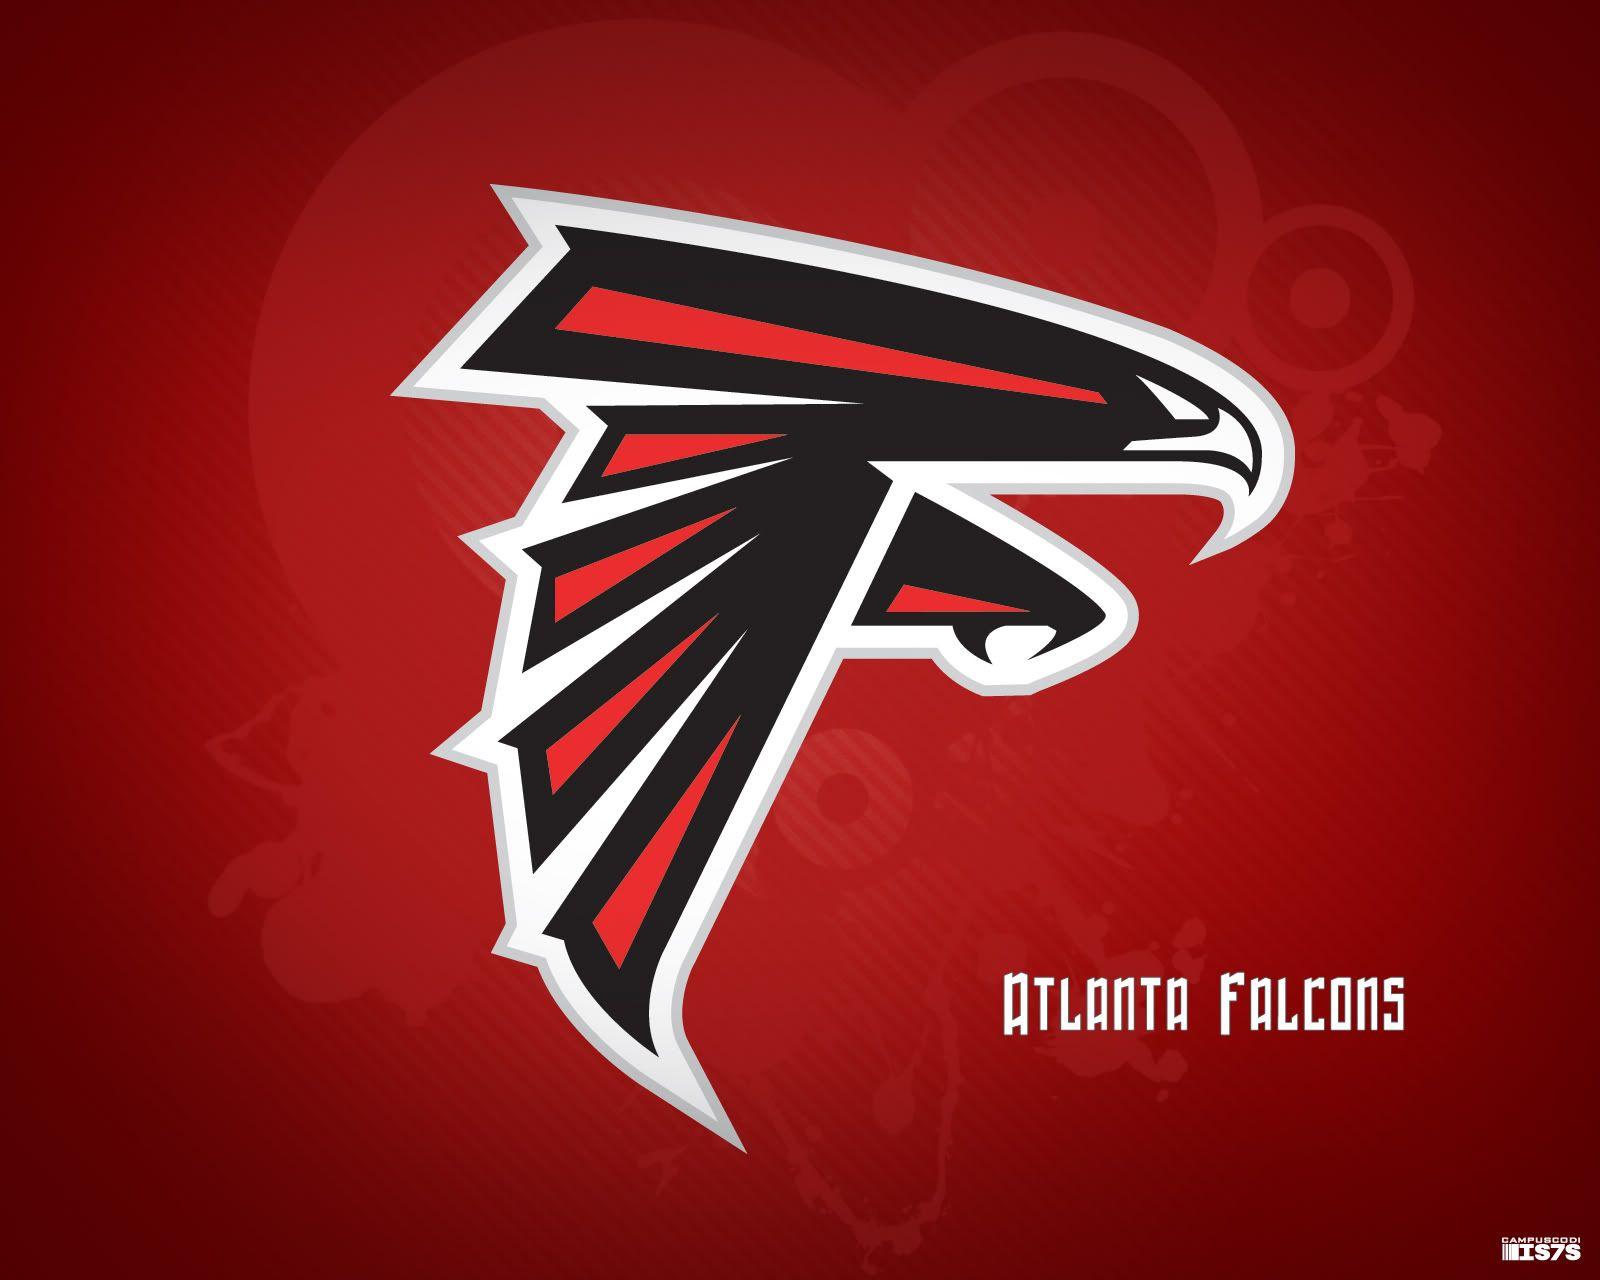 NFL Falcons Logo - ATLANTA FALCONS nfl football g wallpaperx1280